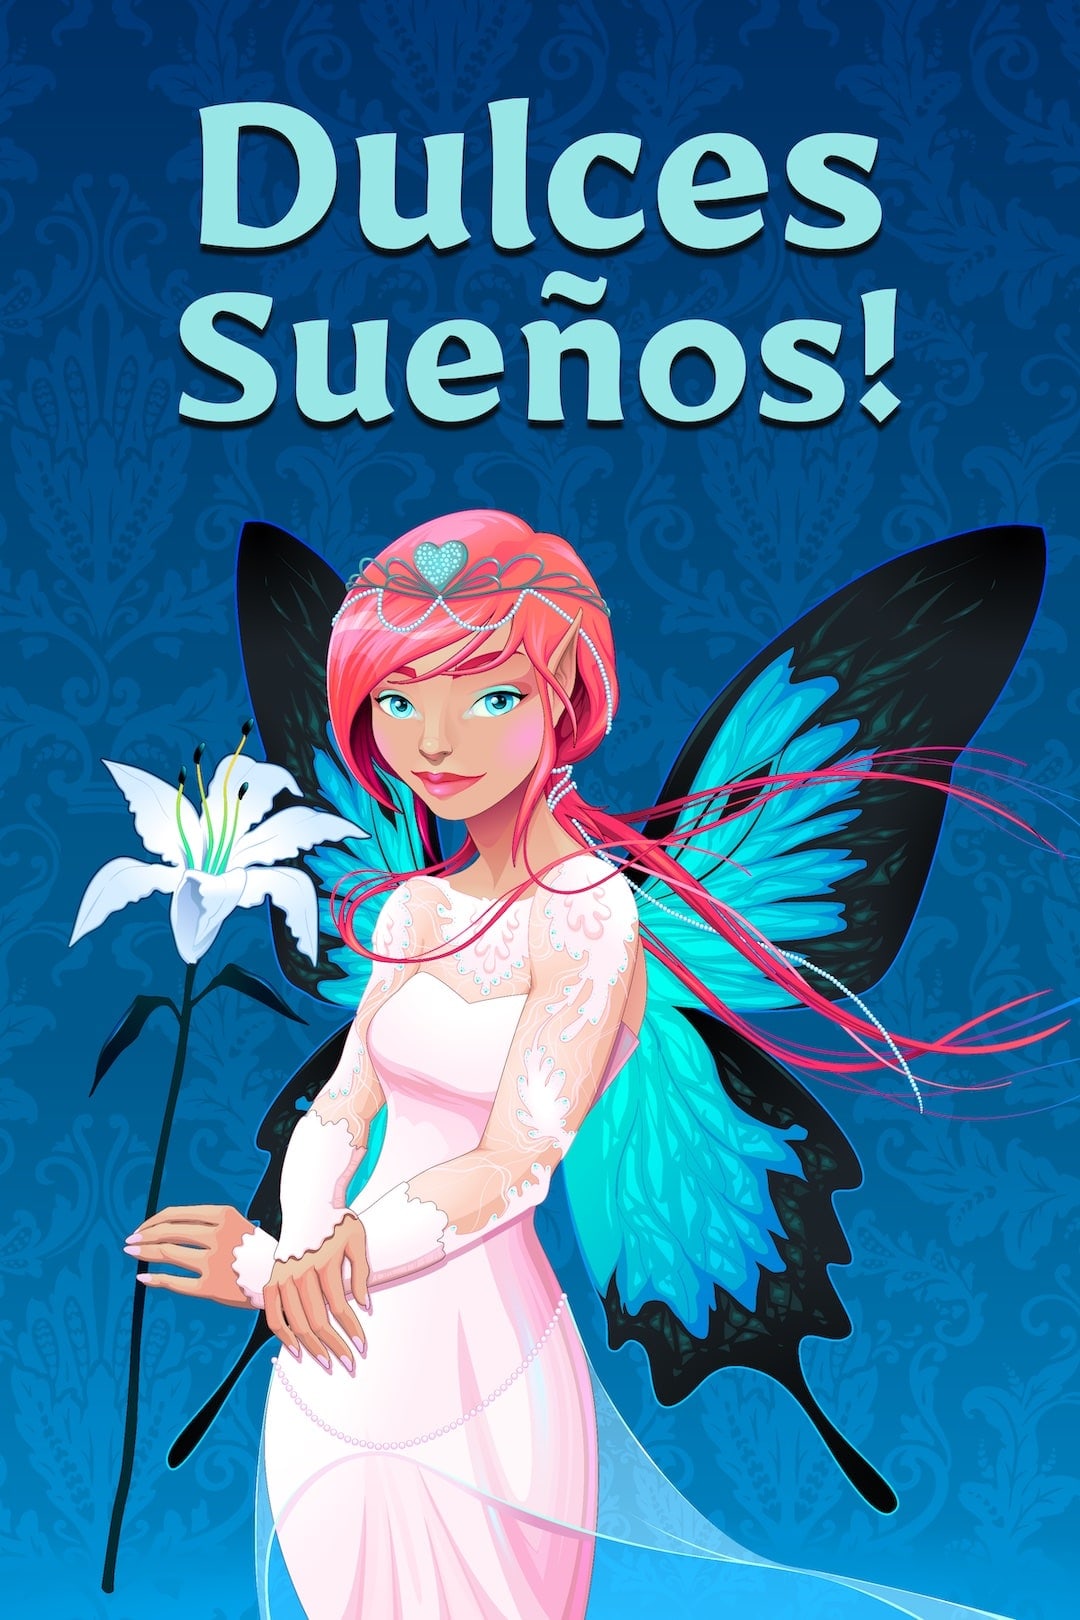 hada con cabello rosado y alas azules sosteniendo una flor, con texto: dulces sueños